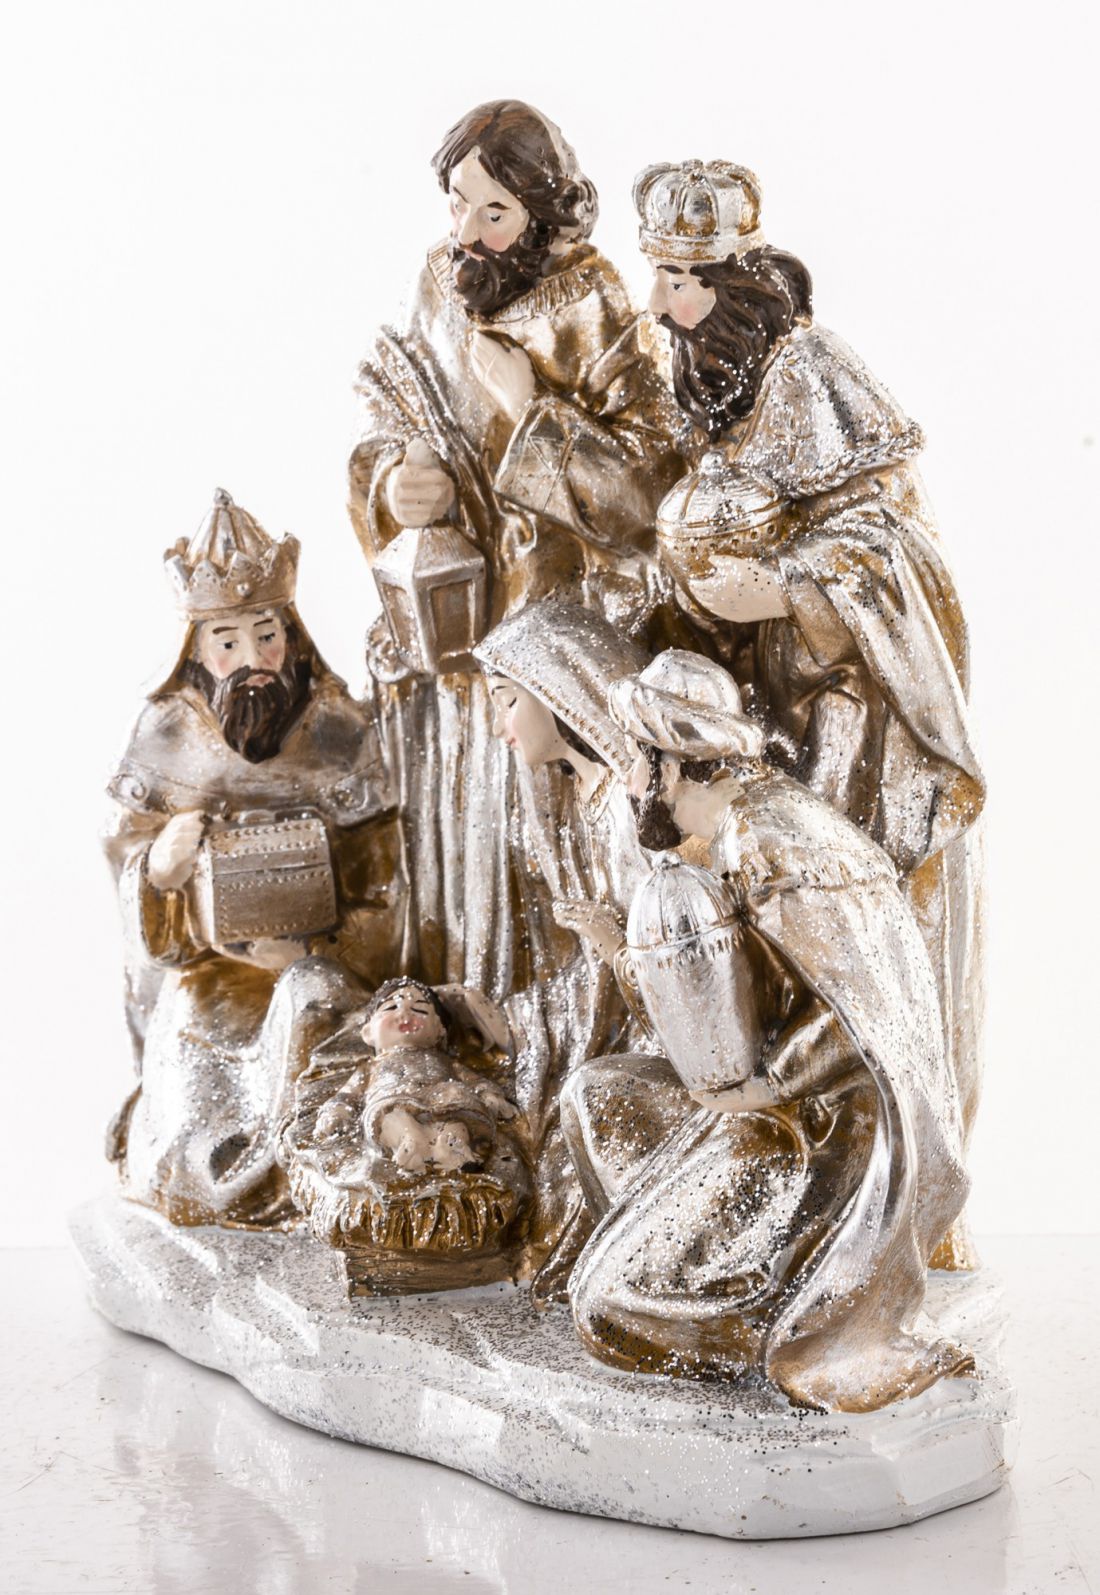 Gimimo scena su Juozapu, Marija, Jėzumi, ir trim karaliais 19x21x11 cm